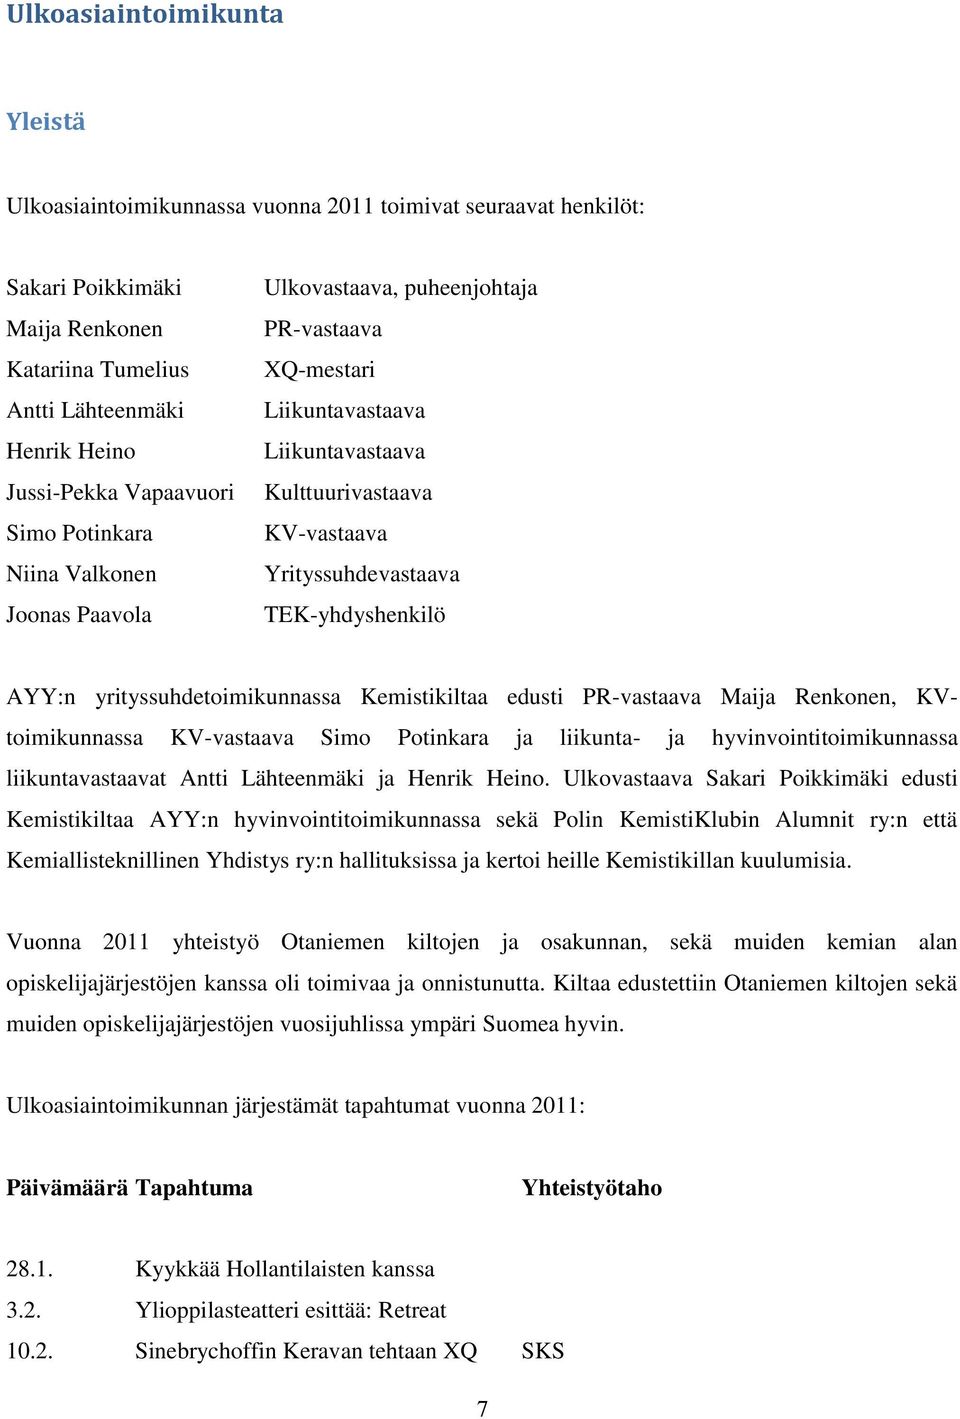 AYY:n yrityssuhdetoimikunnassa Kemistikiltaa edusti PR-vastaava Maija Renkonen, KVtoimikunnassa KV-vastaava Simo Potinkara ja liikunta- ja hyvinvointitoimikunnassa liikuntavastaavat Antti Lähteenmäki